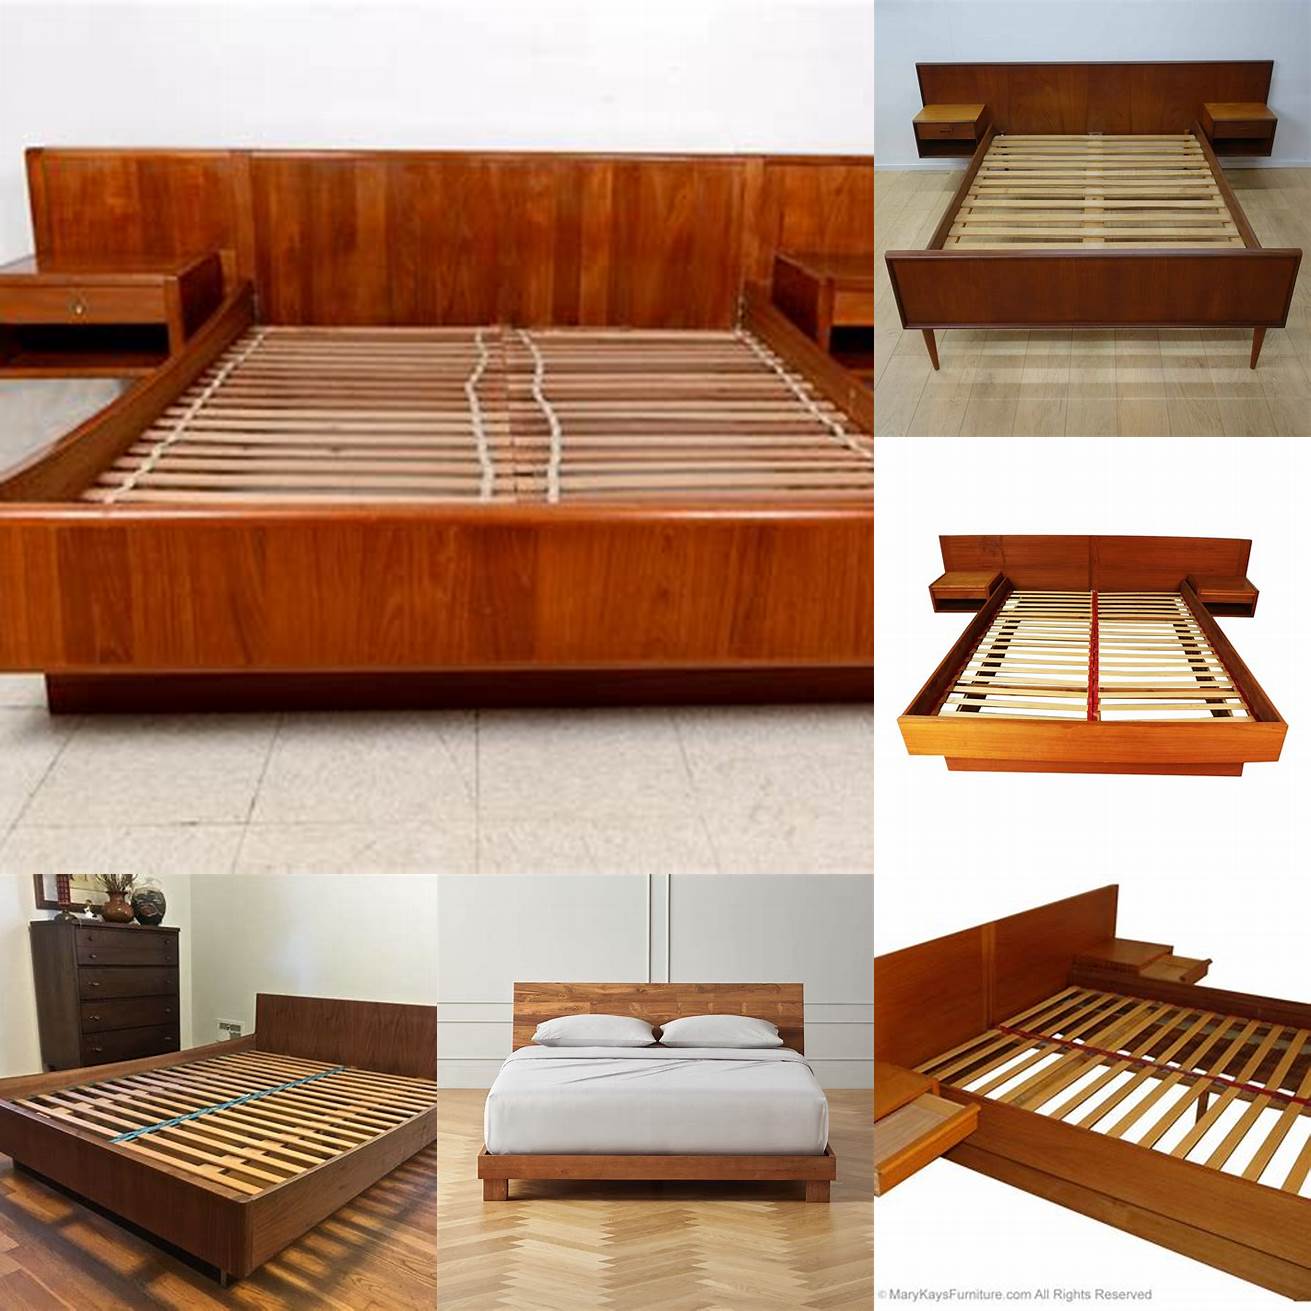 A teak bed frame